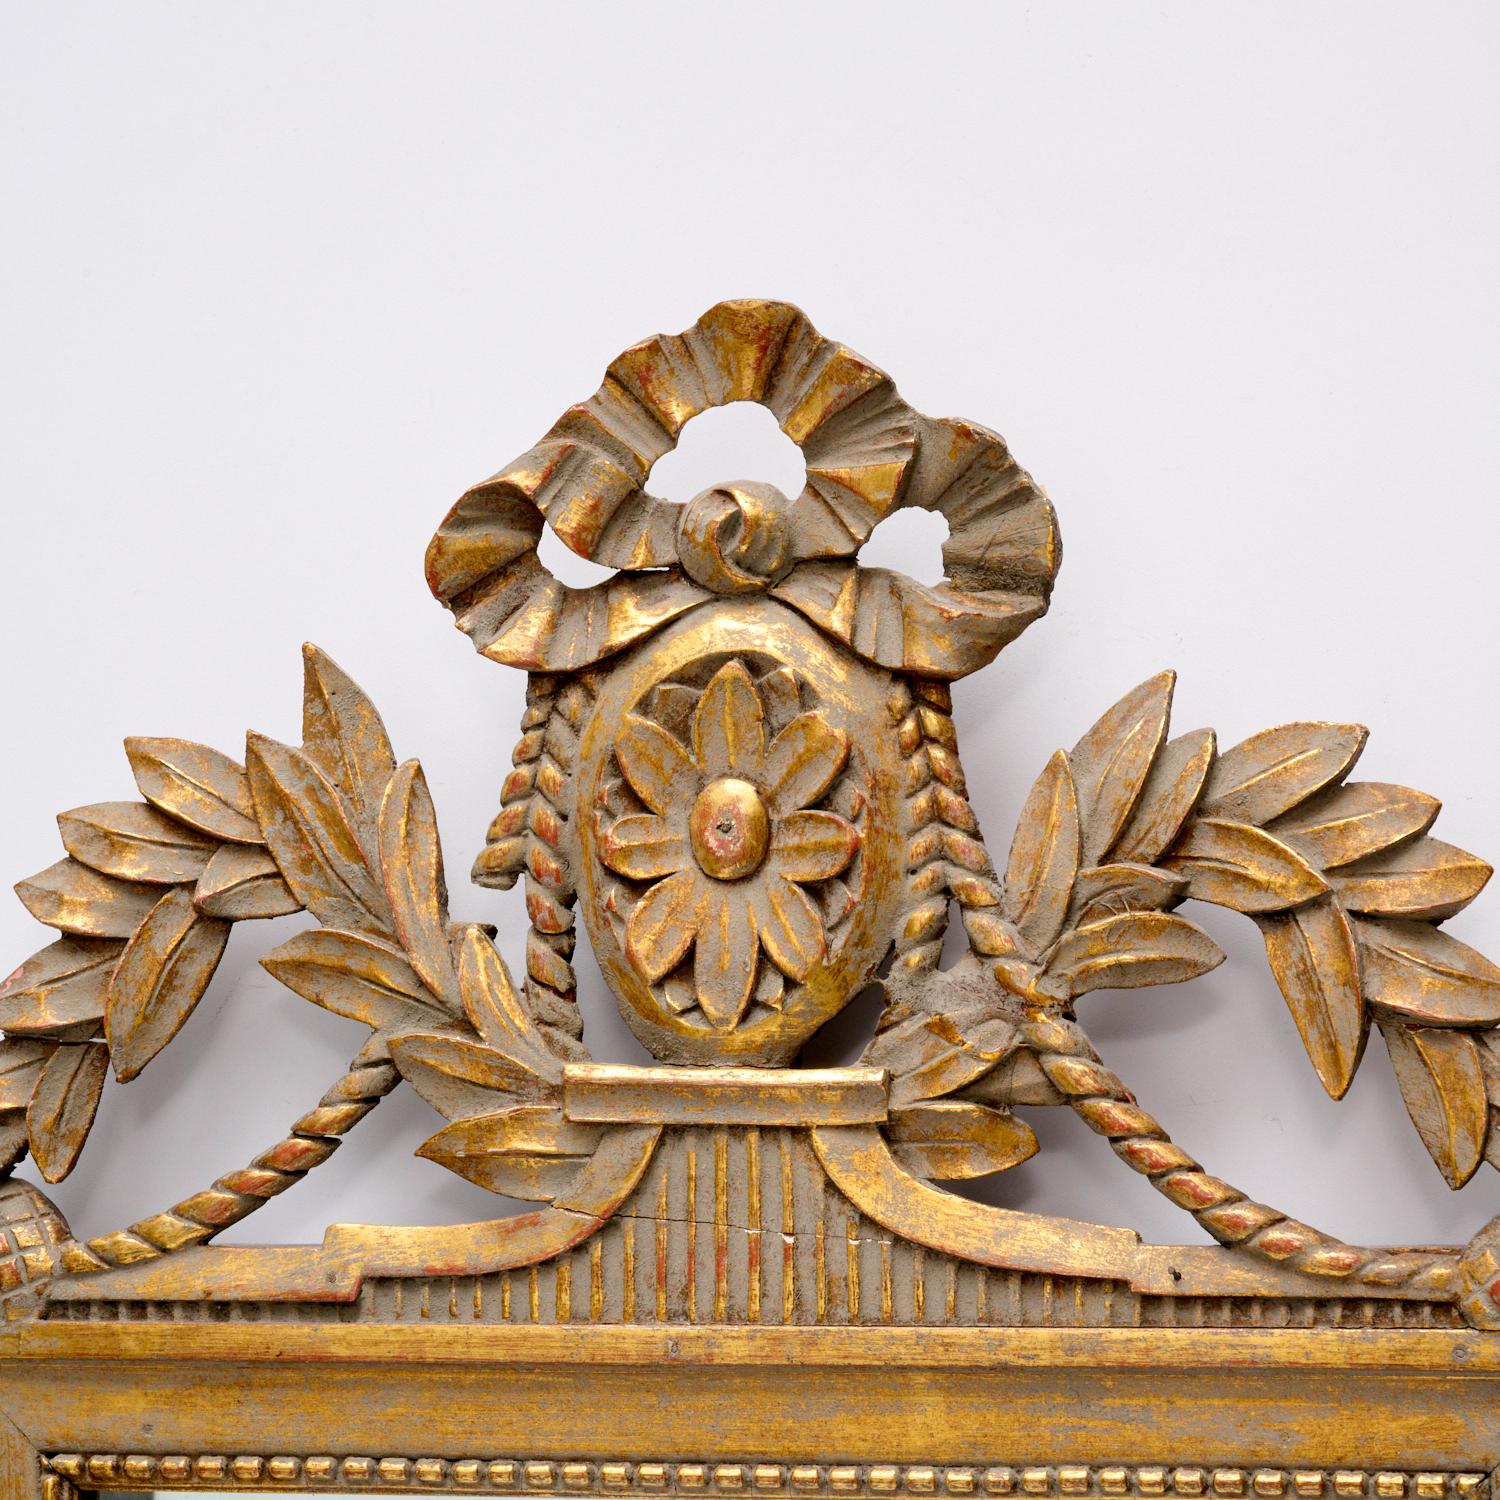 Charmant miroir de mariage en bois doré de style Louis XVI, datant de la fin du XIXe siècle, décoré de motifs floraux et d'une crête en ruban.

Un miroir de mariée était un cadeau de mariage traditionnel remontant à l'époque de la Grèce antique. Il